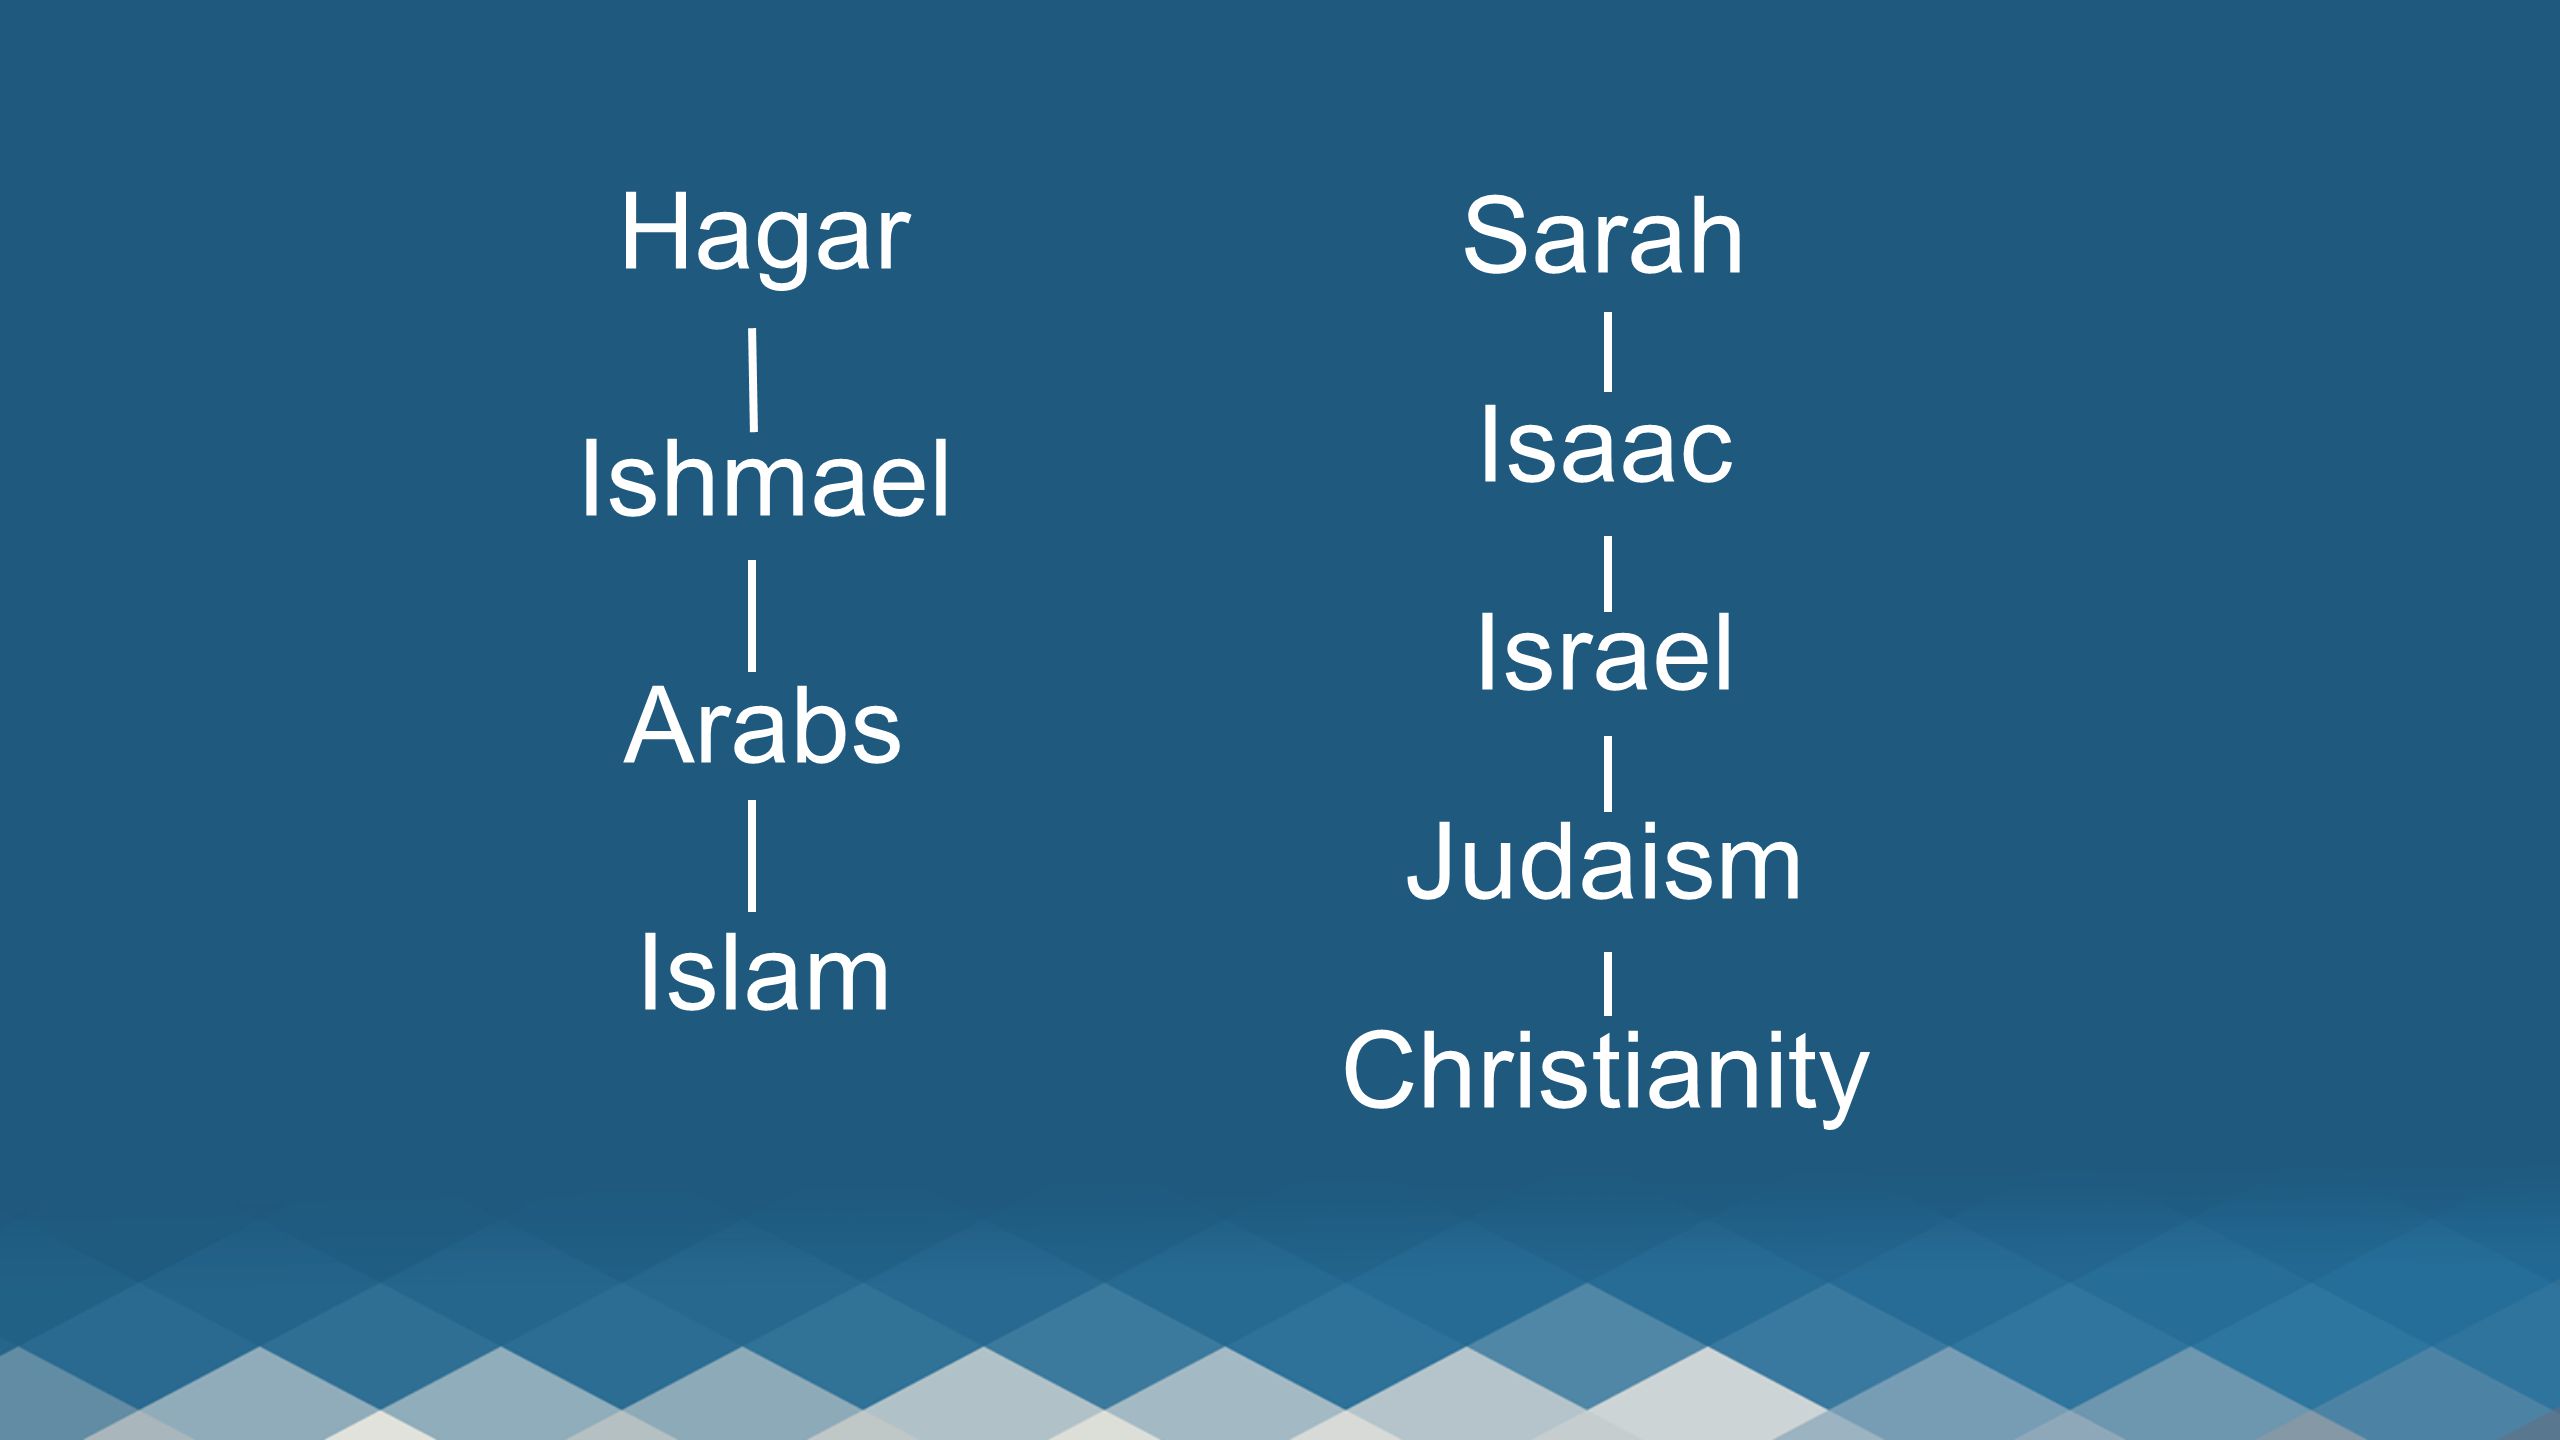 Hagar Ishmael Arabs Islam Sarah Isaac Israel Judaism Christianity